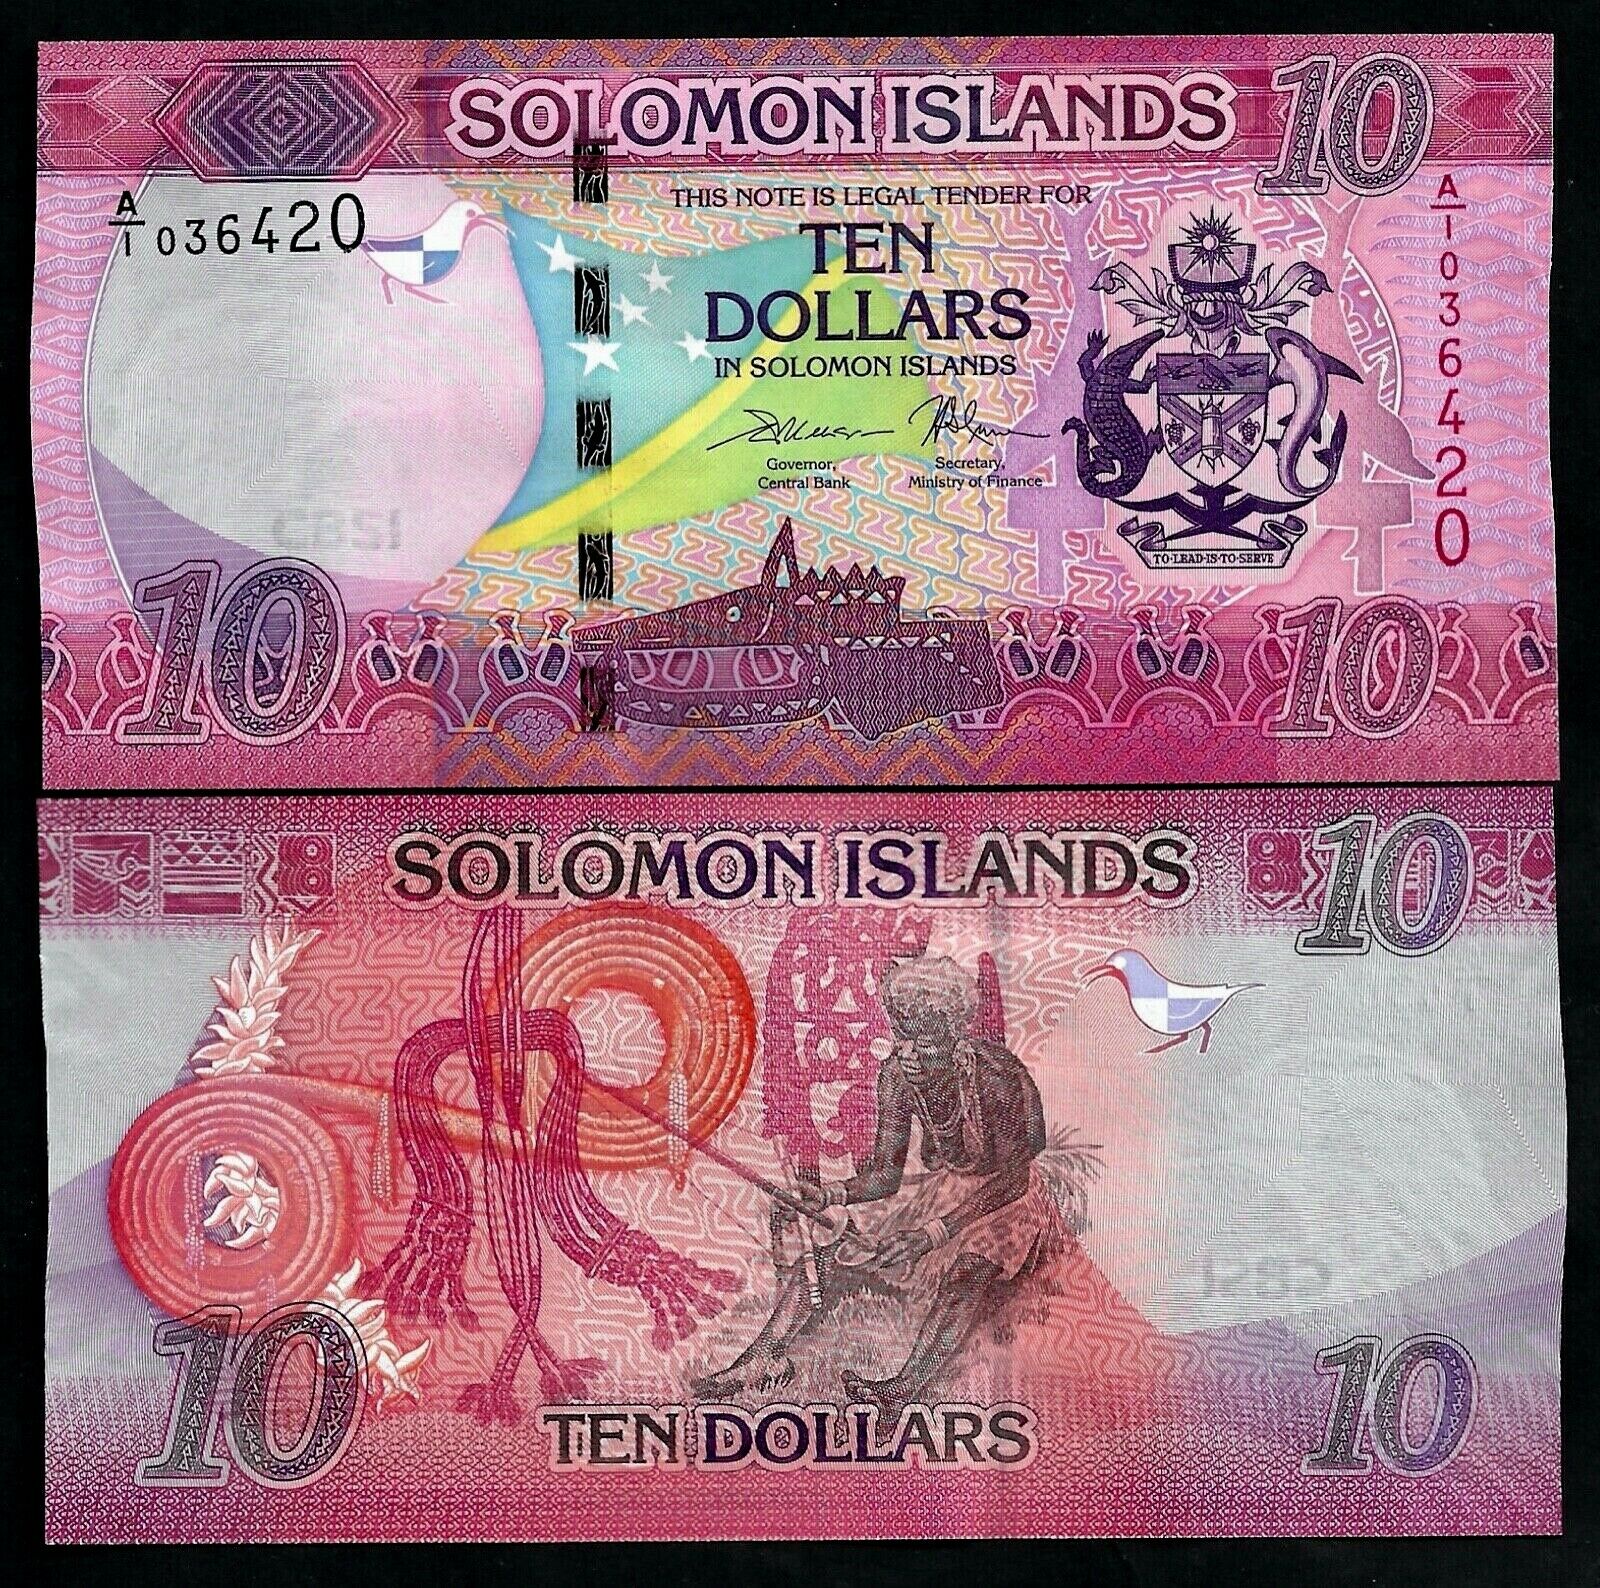 Tiền thế giới 10 dollars quần đảo Solomon mới phát hành màu mè